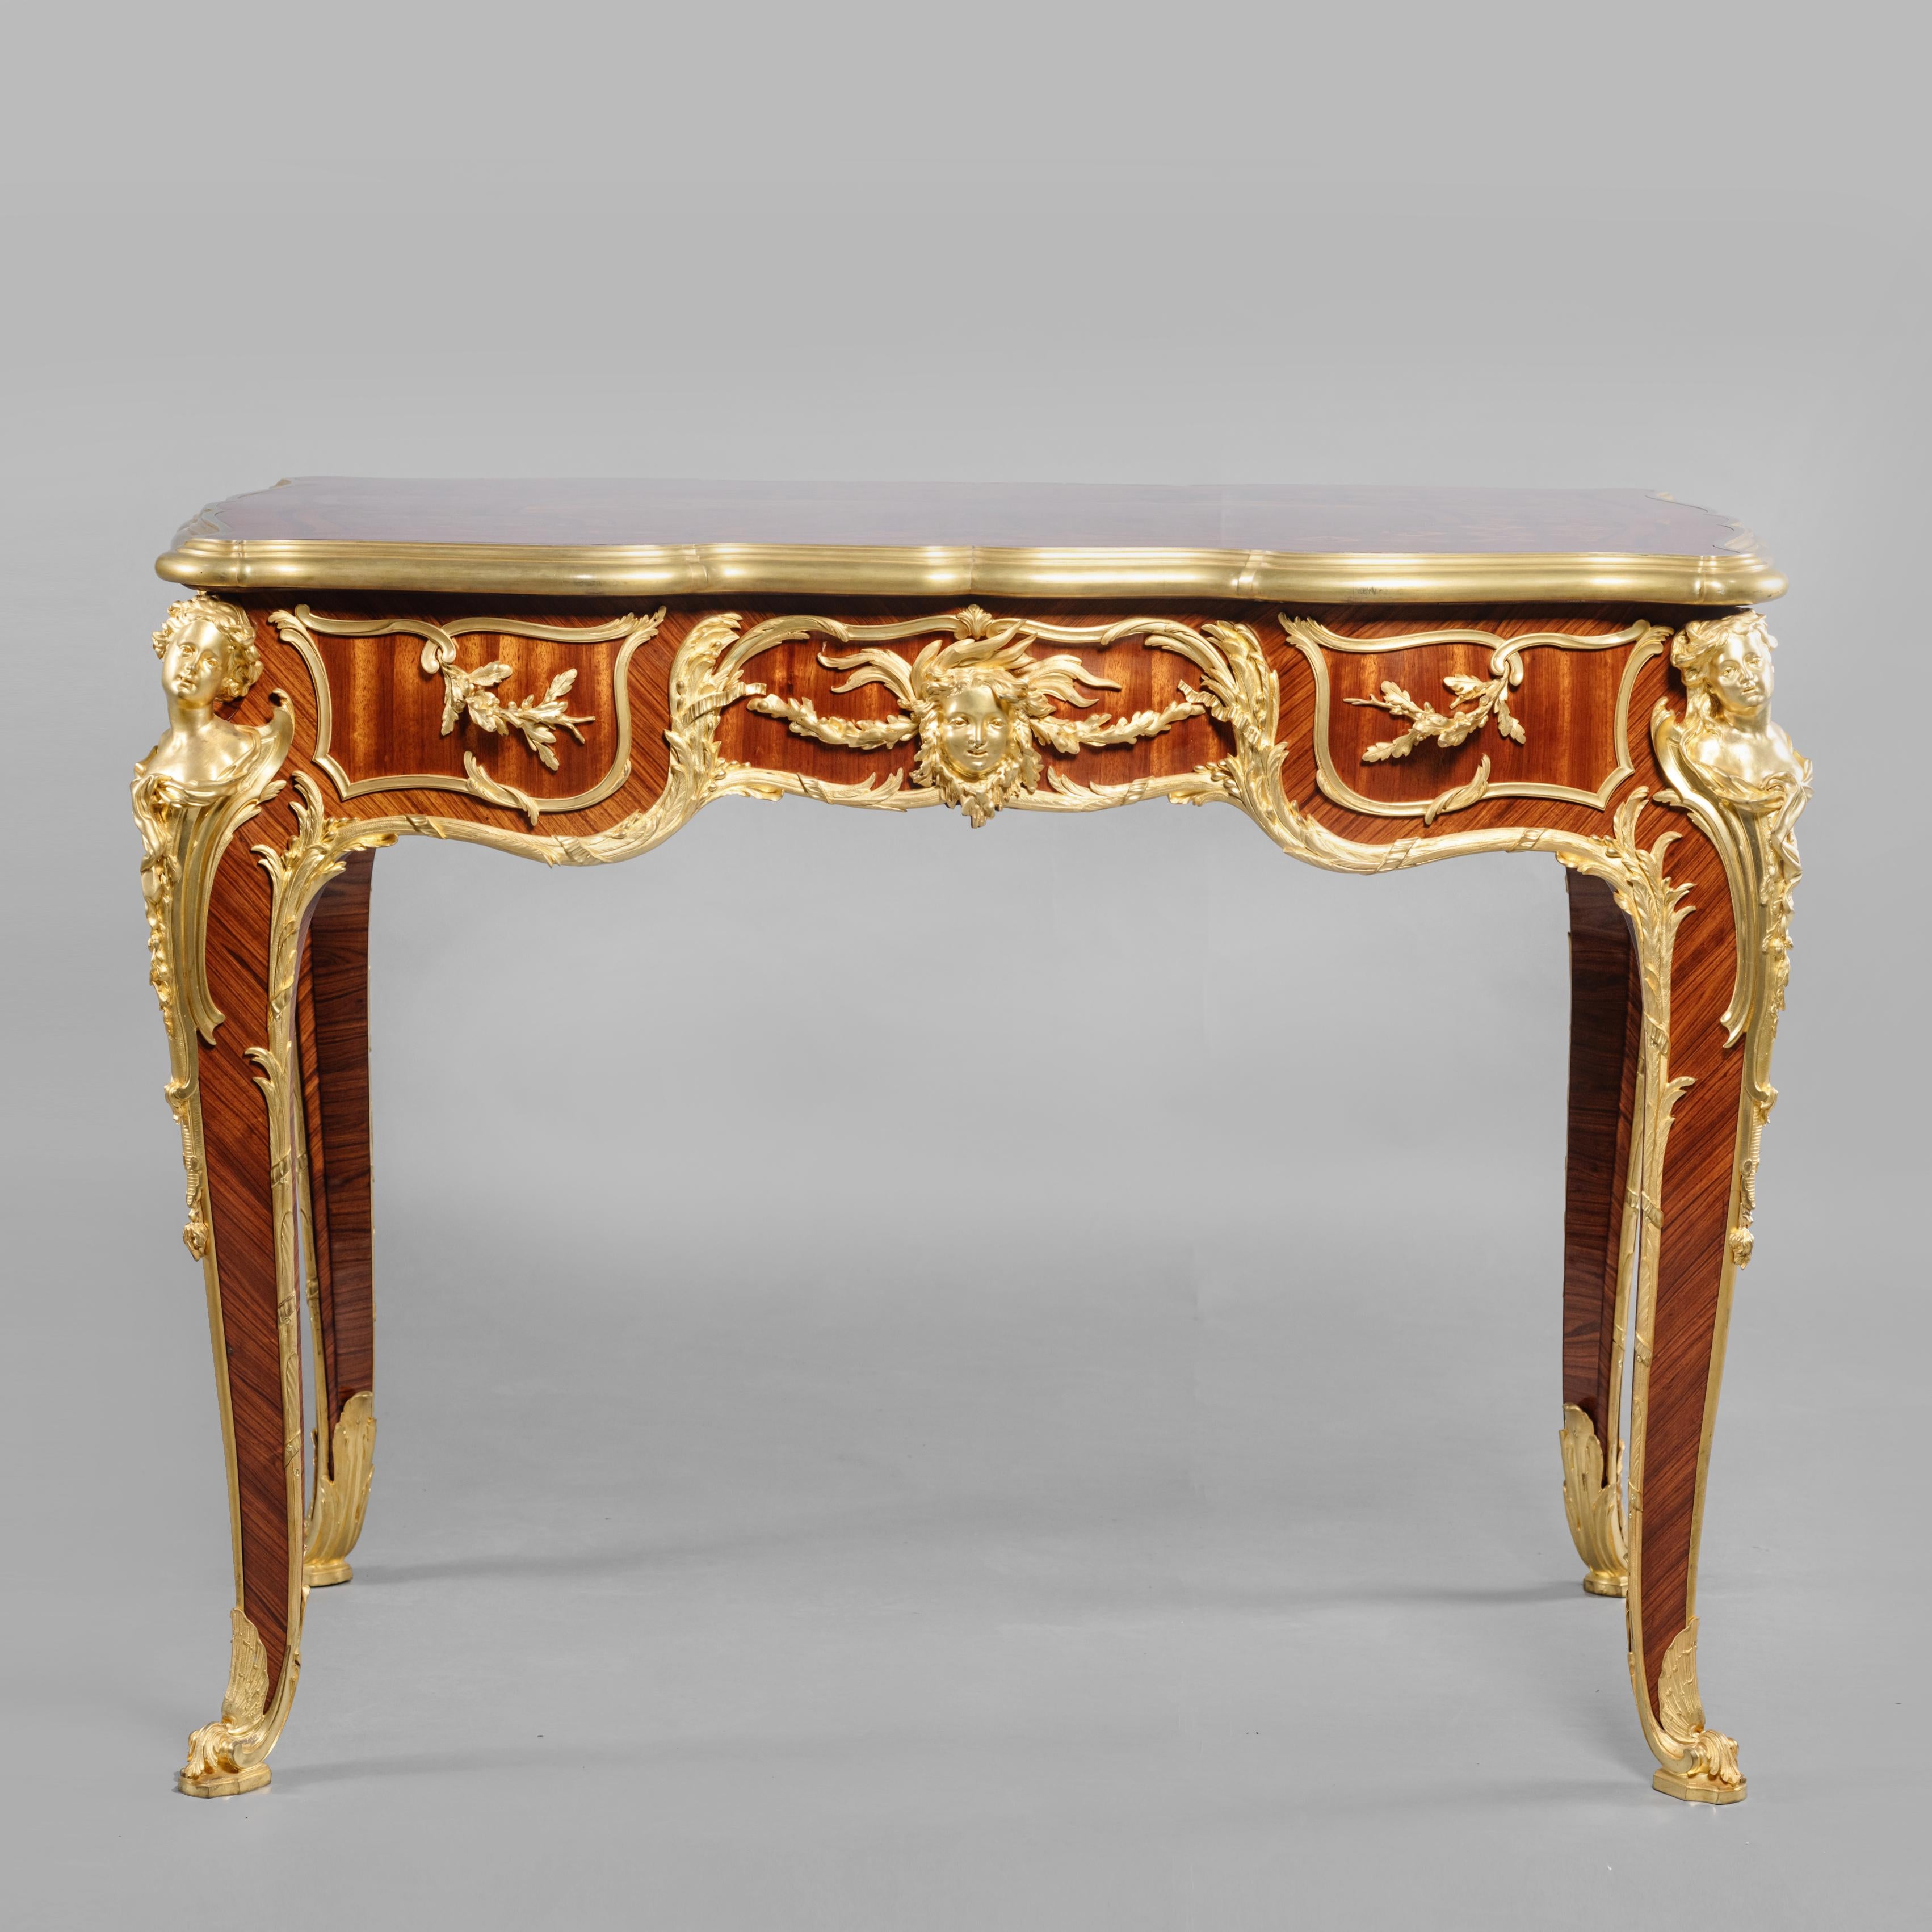 Ein außerordentlich seltener und bedeutender Tisch mit Intarsien aus vergoldeter Bronze im Stil von Ludwig XV. von François Linke, die Beschläge wurden von Léon Messagé entworfen.
 
Linke Index Nr. 930. 
Signiert 